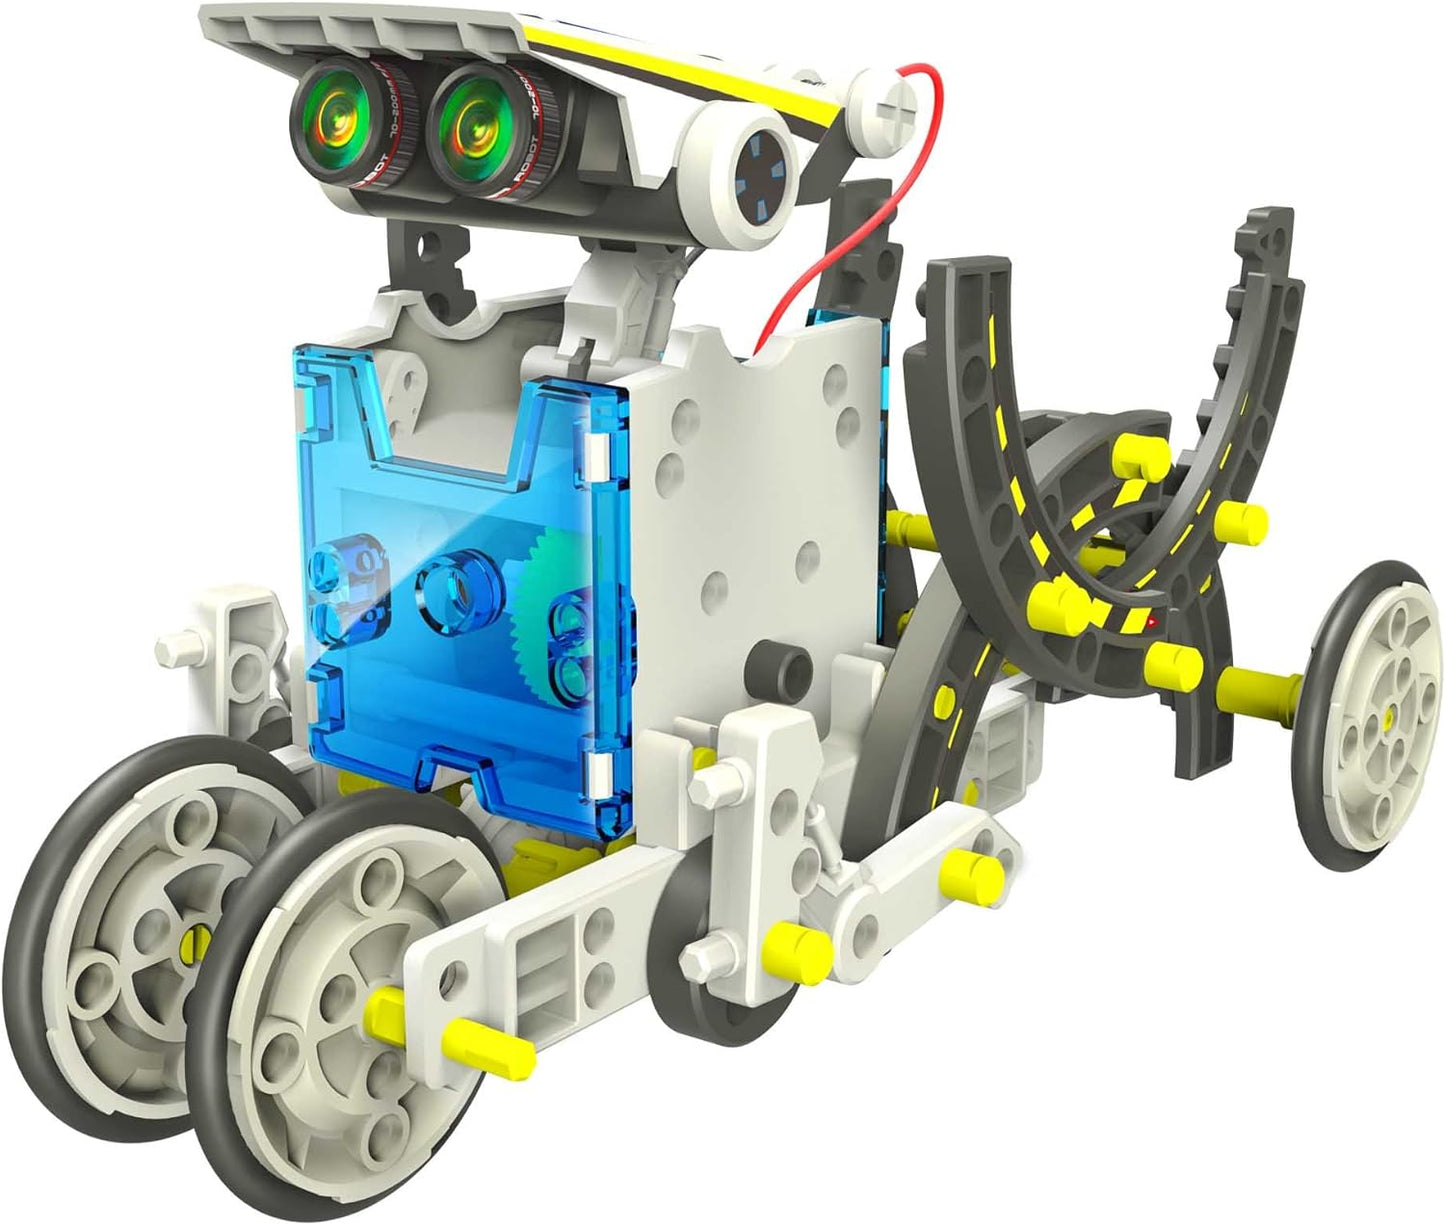 14 in 1 Solar Robot Kit Educational Solar Power Robot